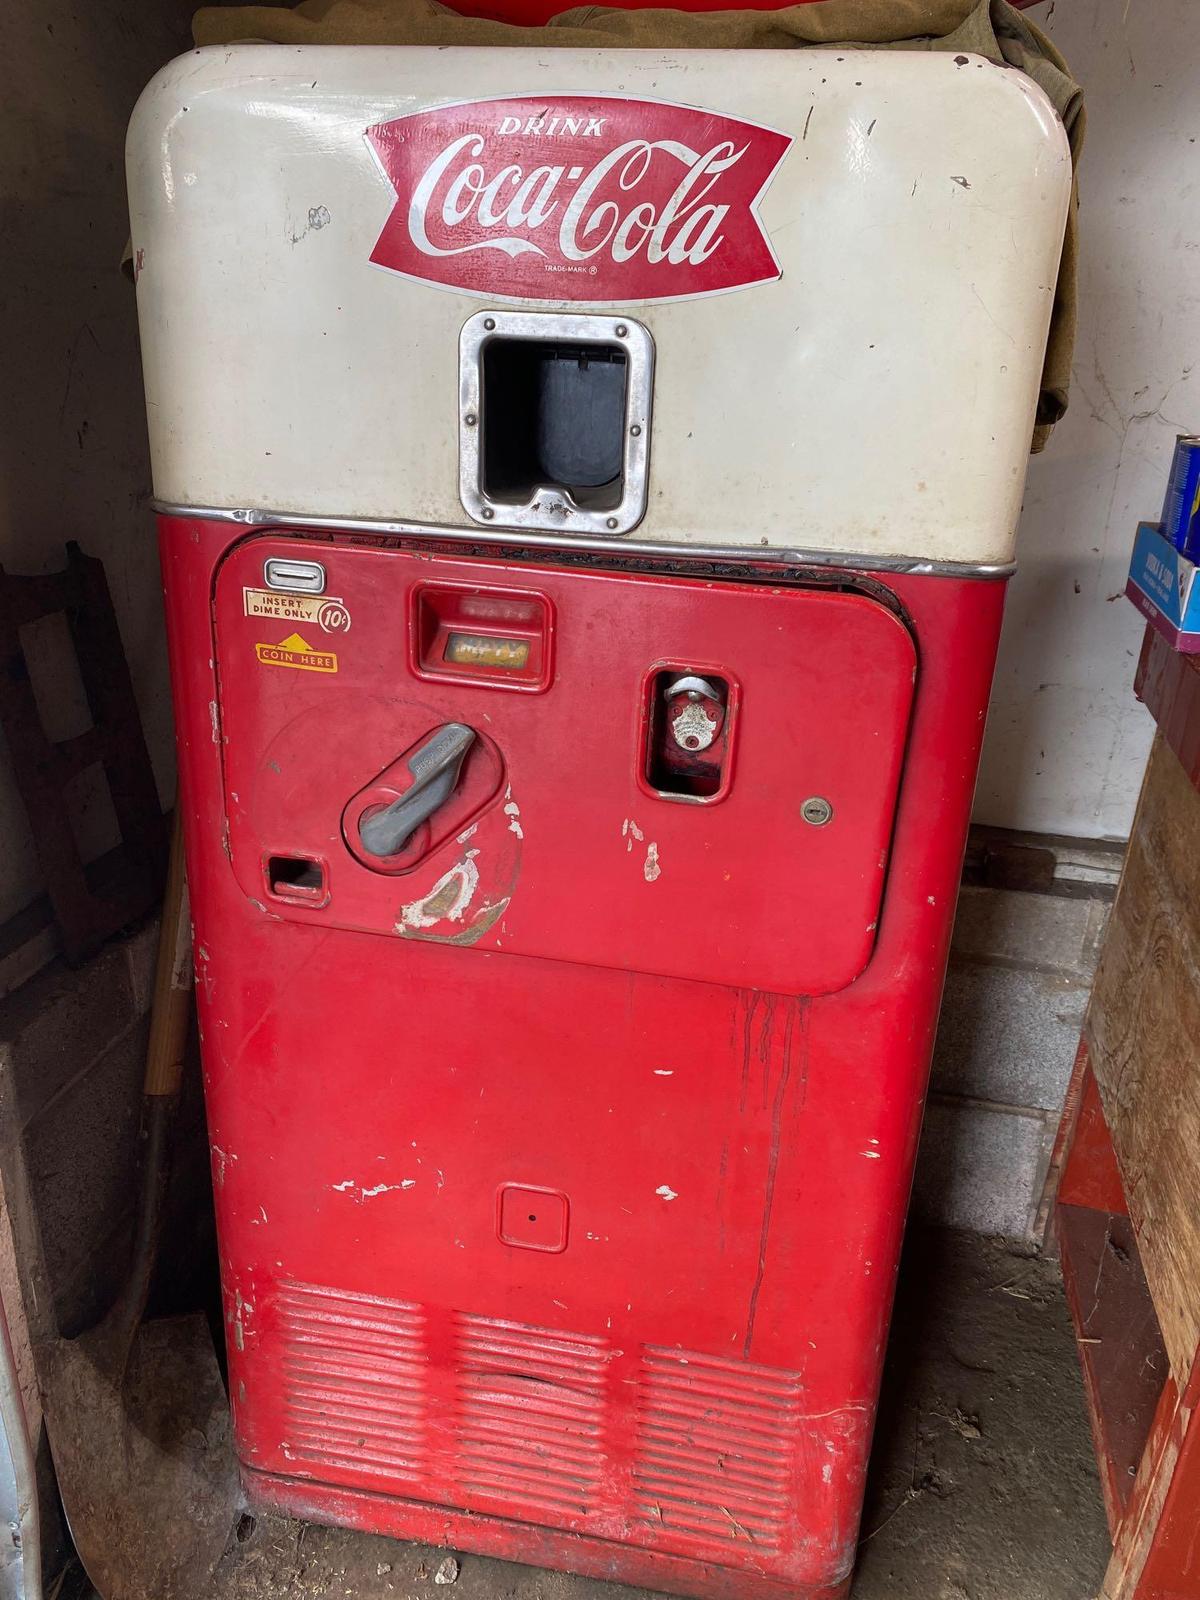 Coca Cola machine -